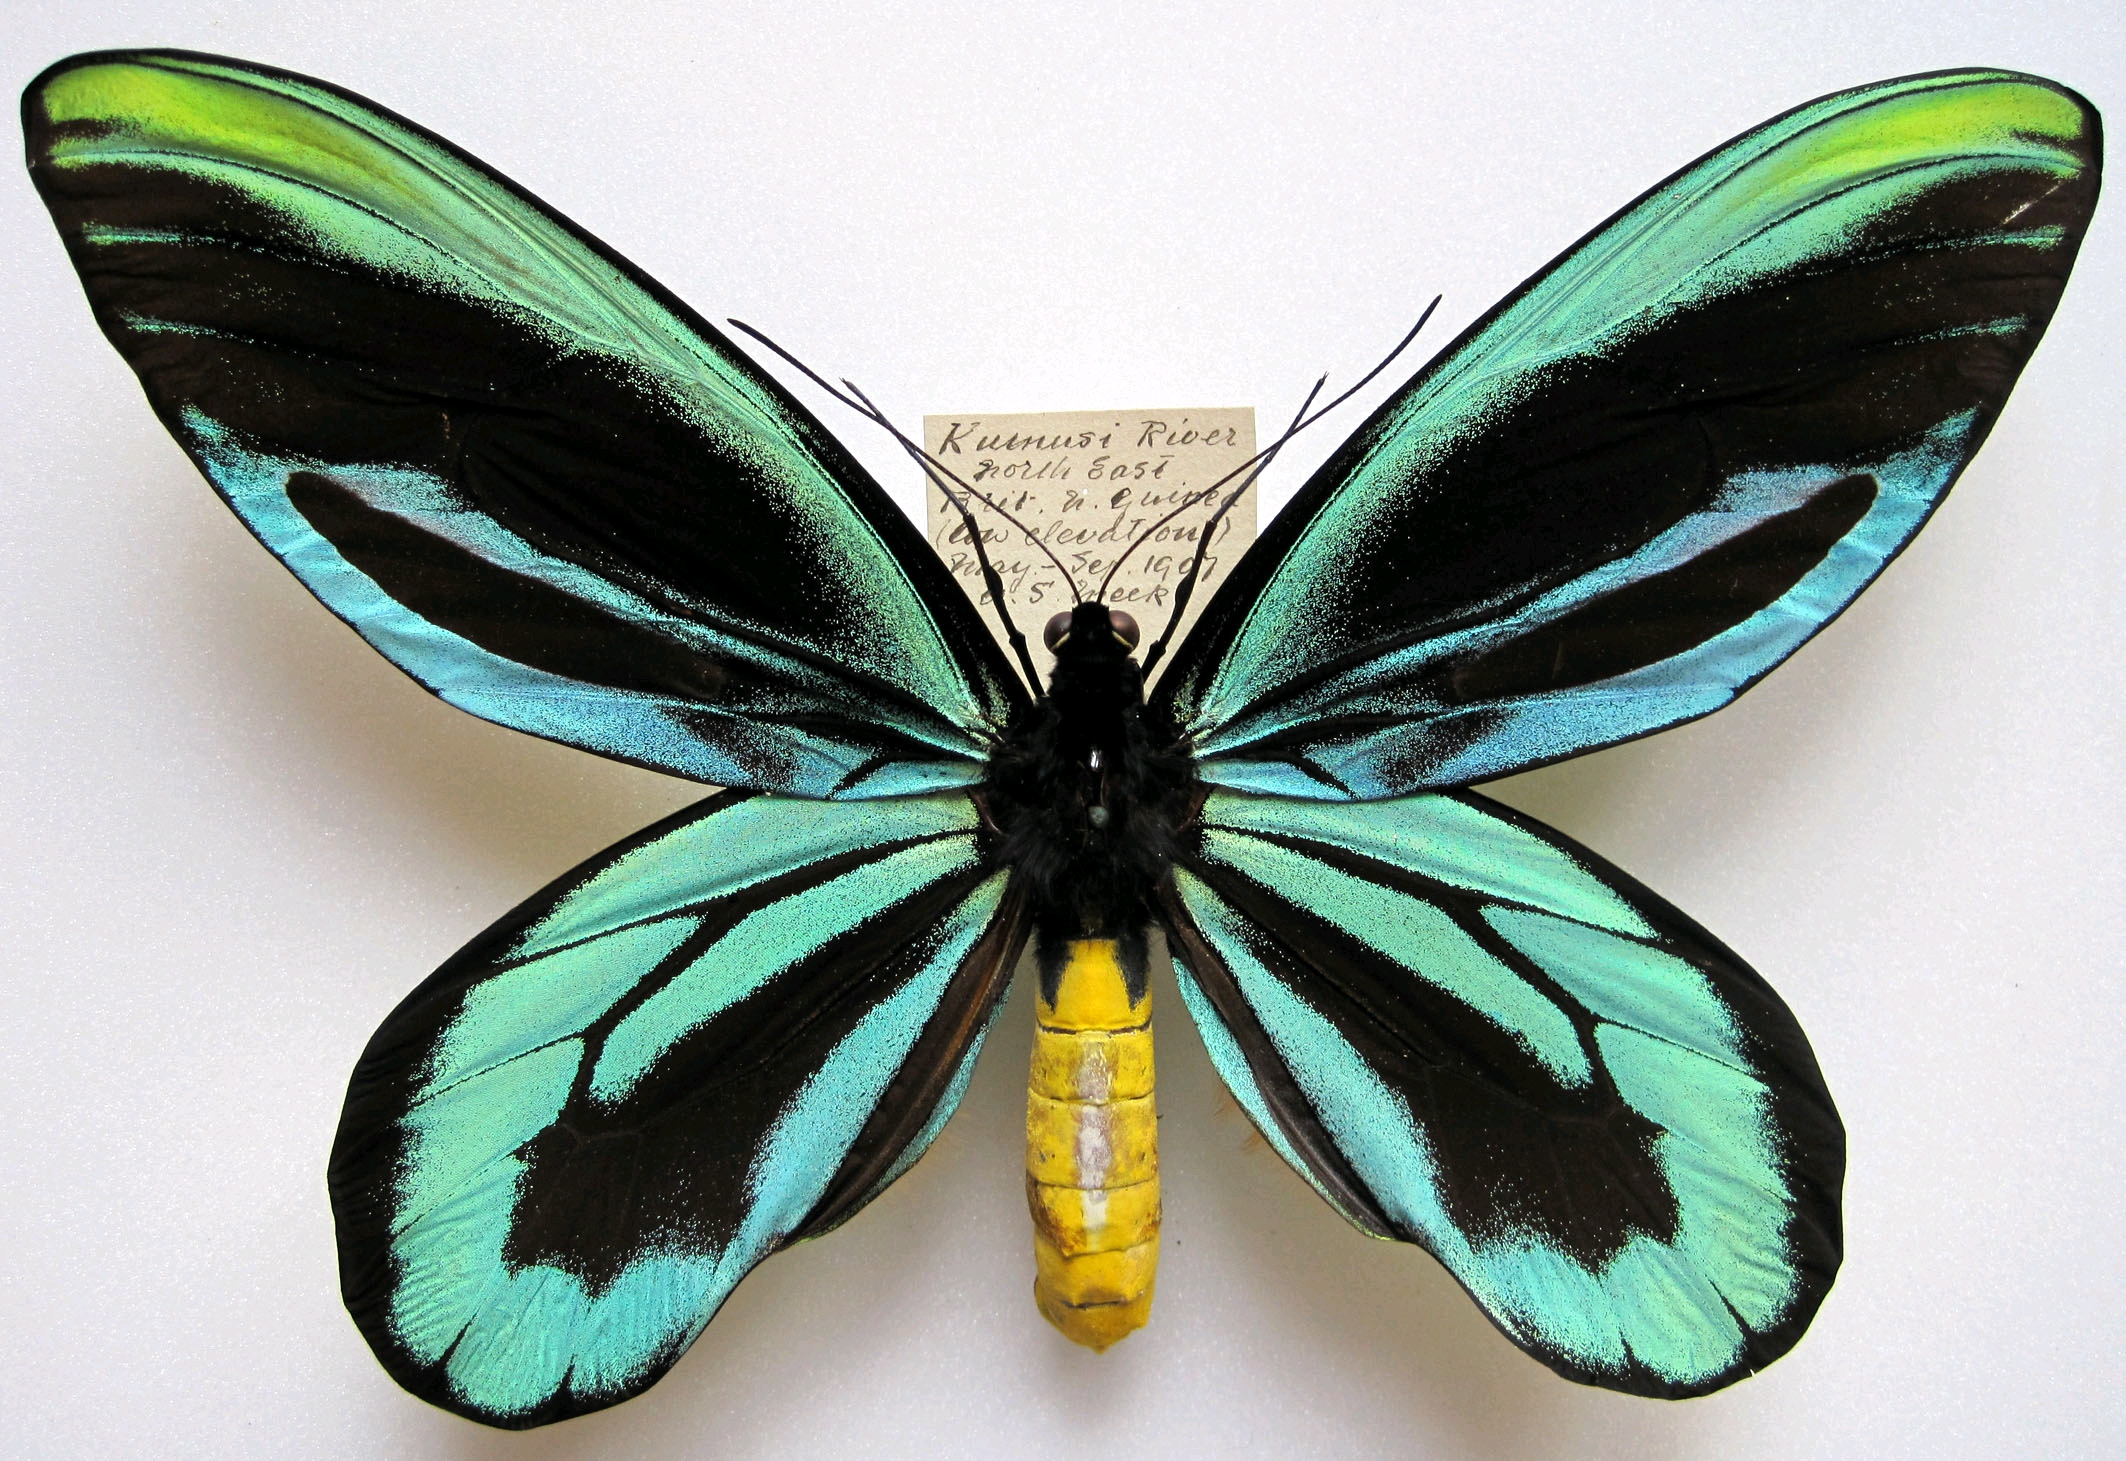 亚历山大鸟翼凤蝶♂,严格的话它的雌性才是               翅展最宽的